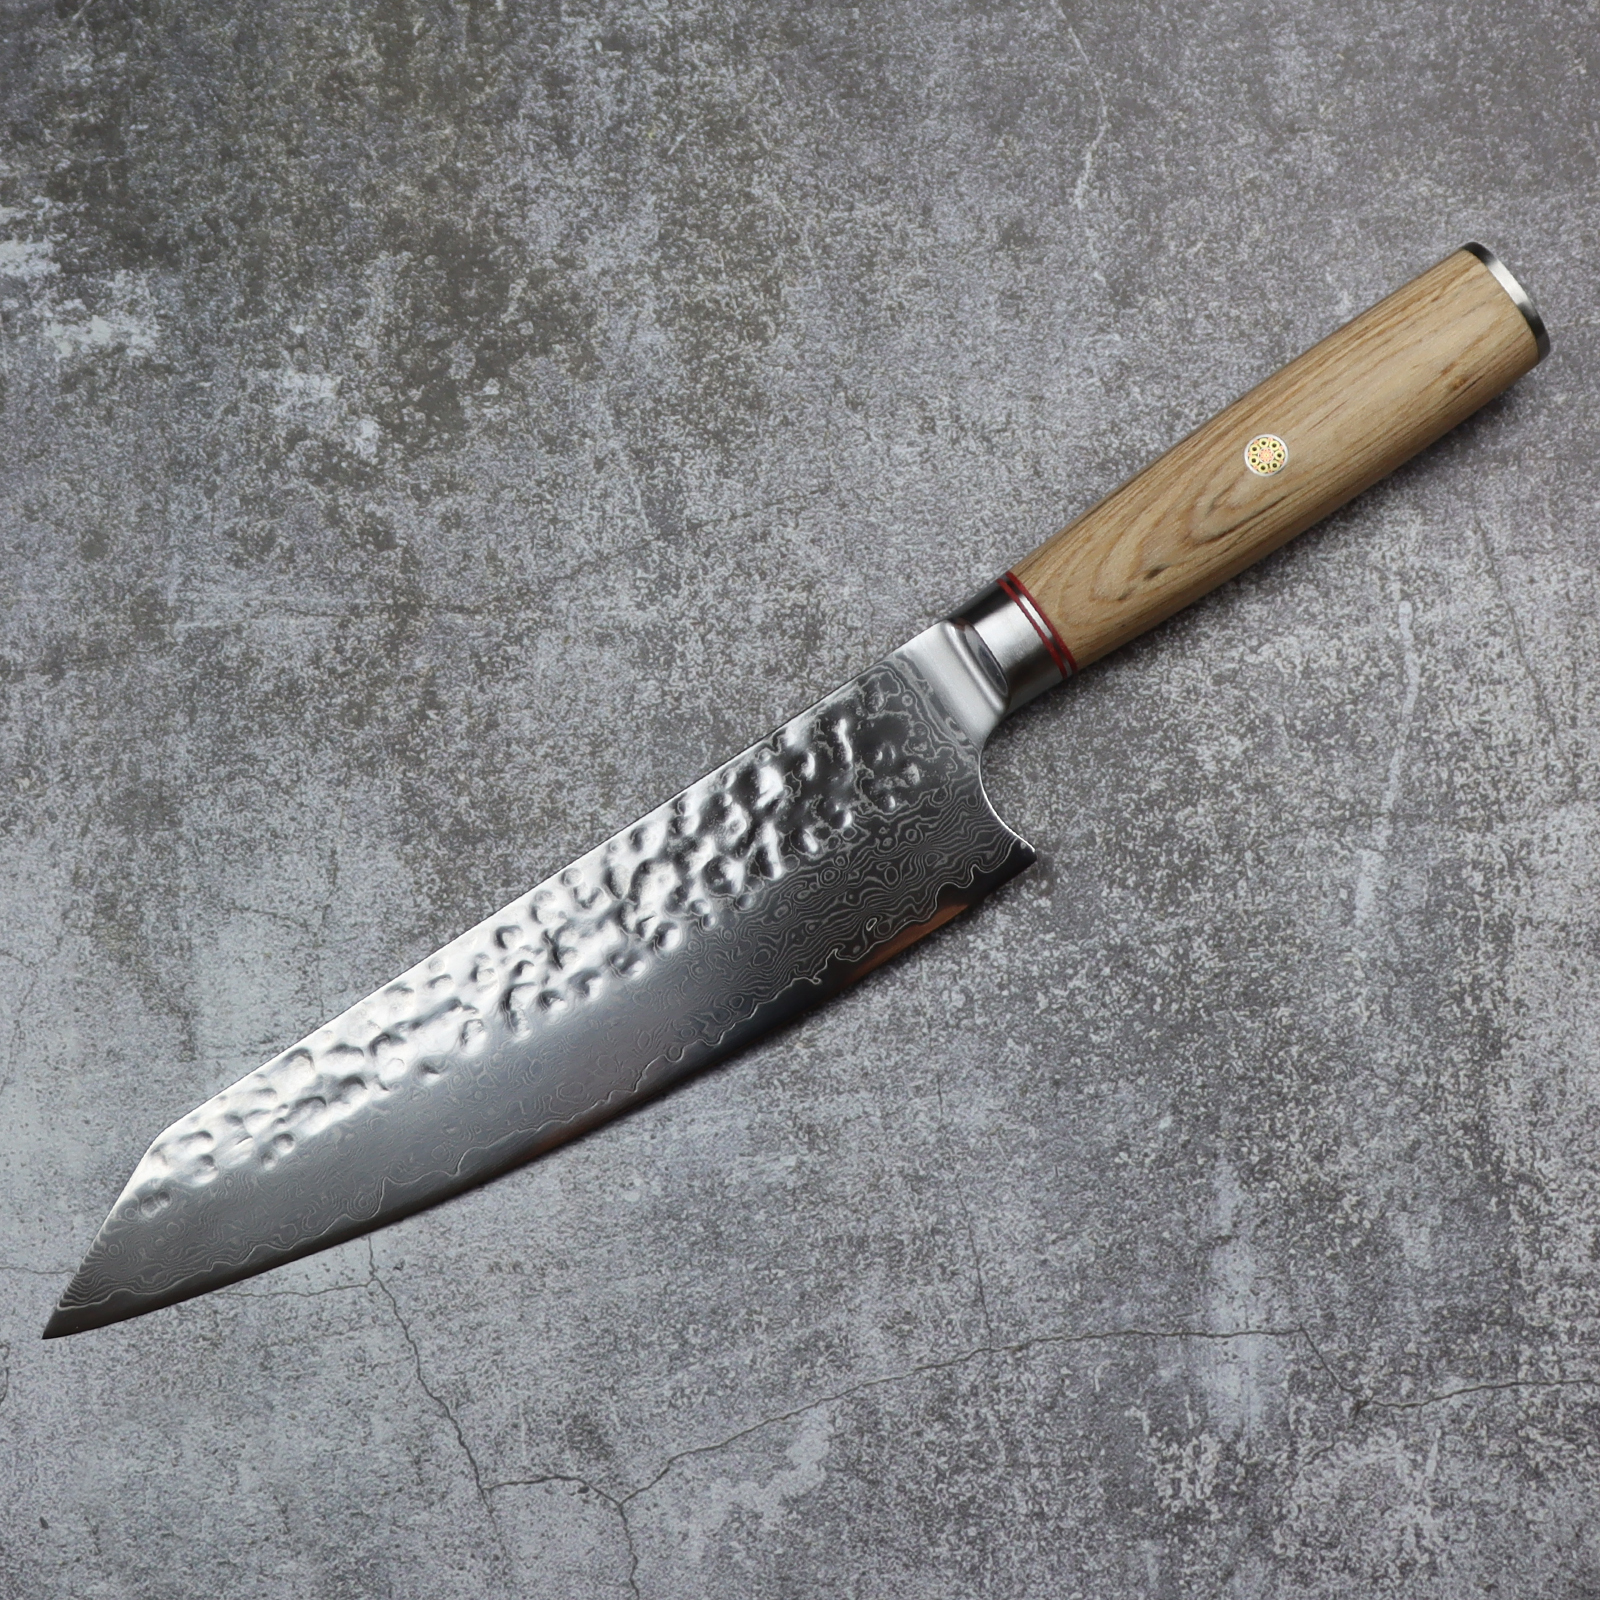 Best chef knife deal: 70% off Ryori Kiritsuke Chef Knife